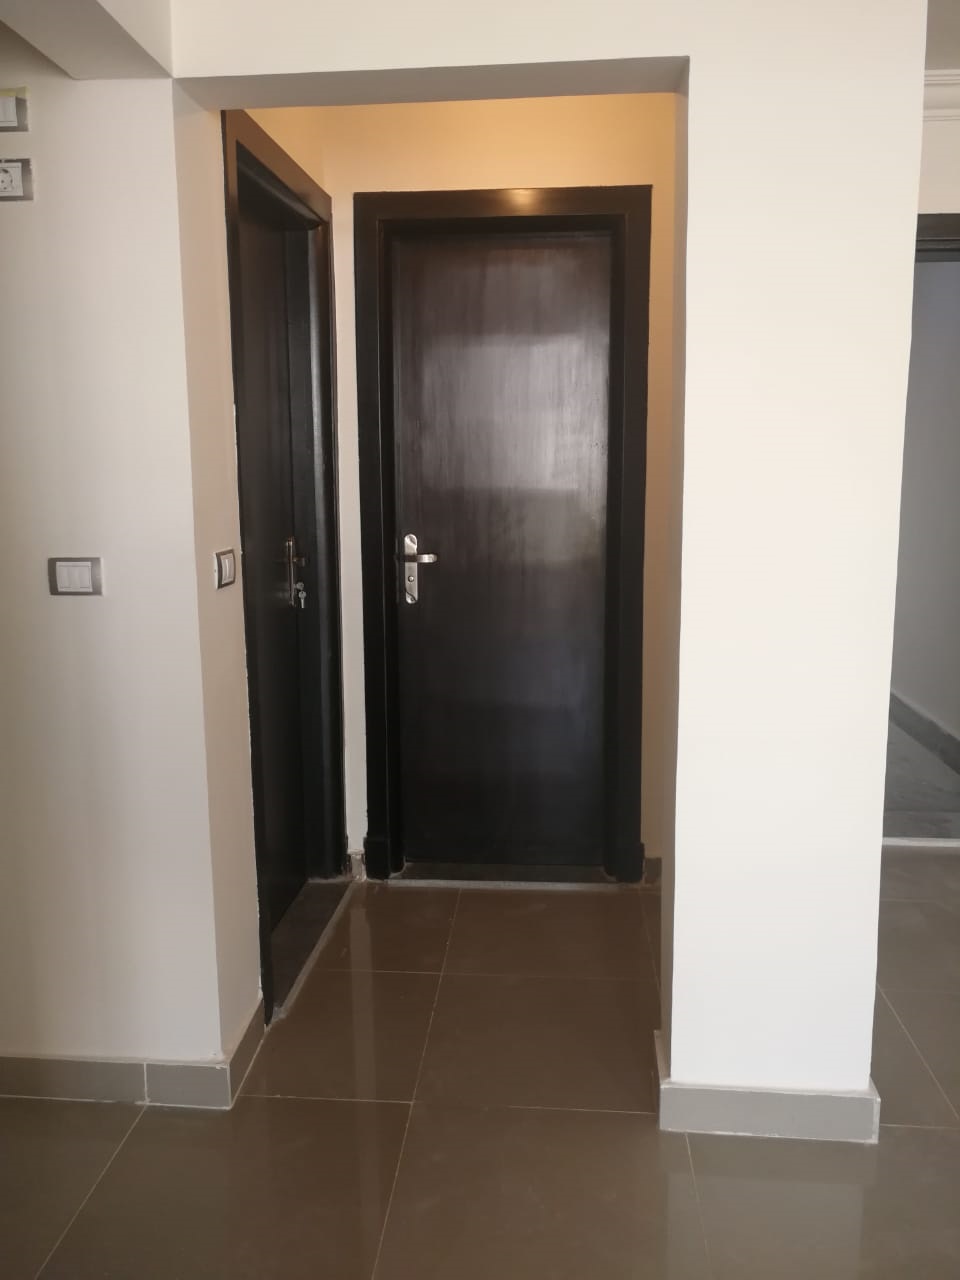 Prime Location Apartment 165 M2 For Rent At Jayd New Cairo. شقة بموقع مميز للإيجار في جايد القاهرة الجديدة 165 متر..jpg